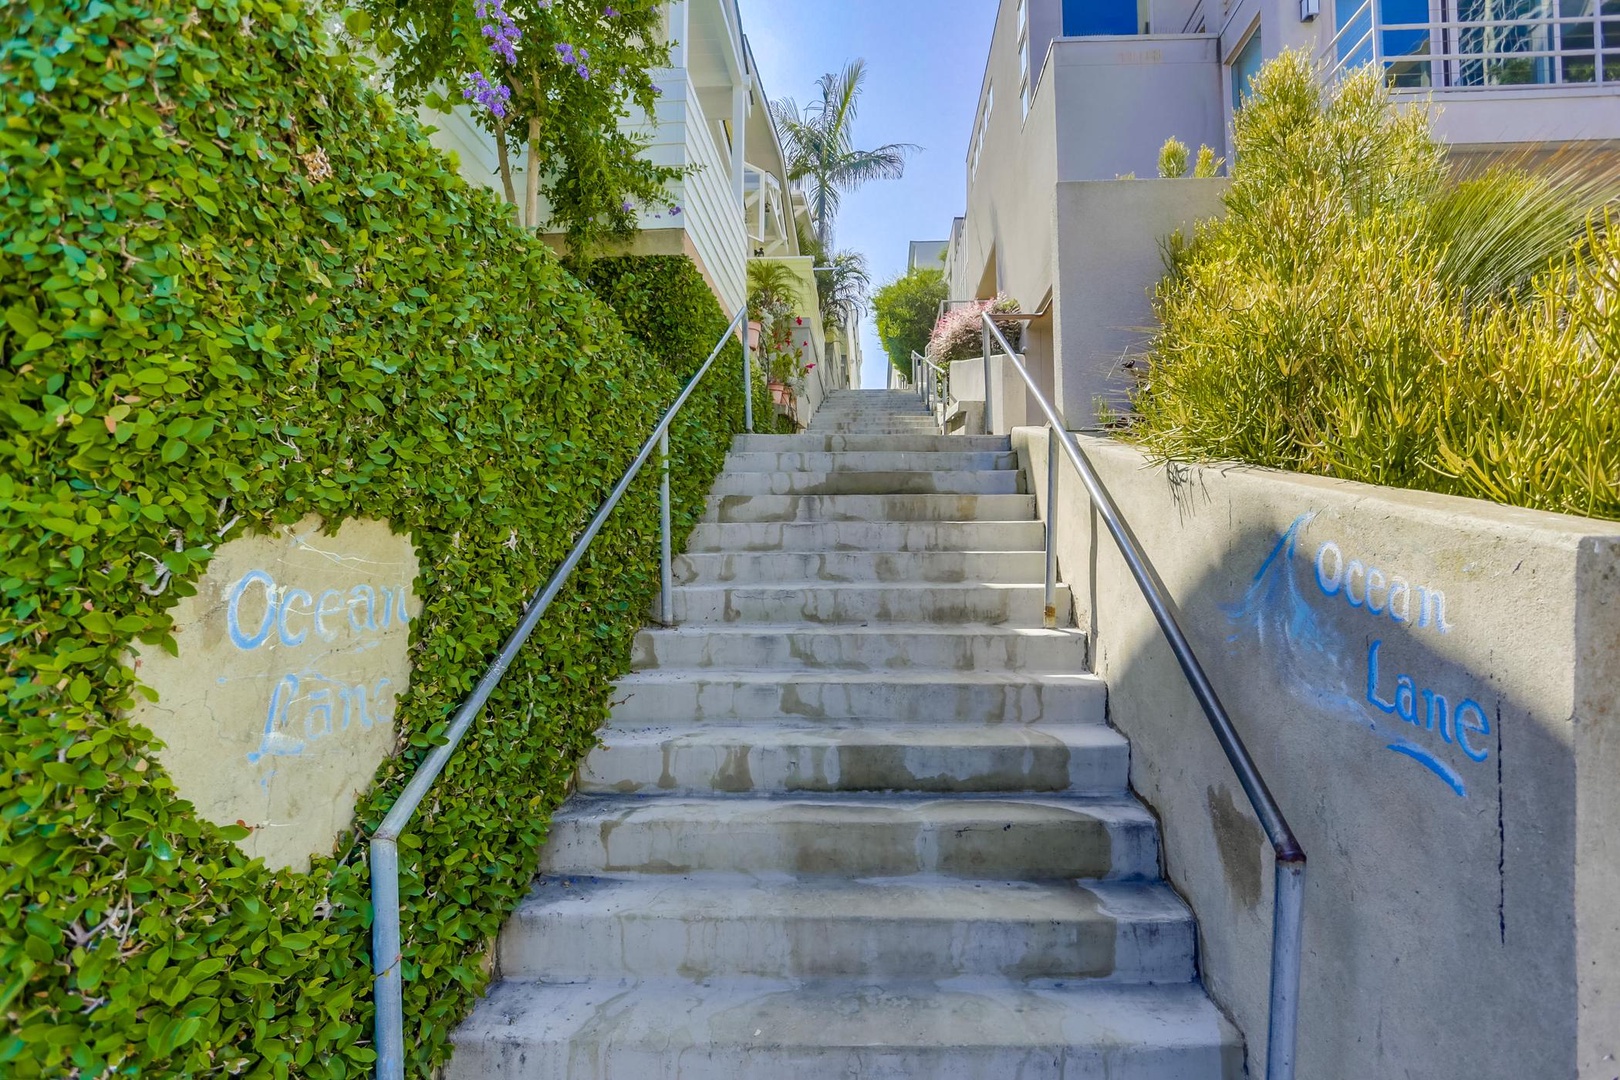 Stairs to entry off Ocean Lane sidewalk